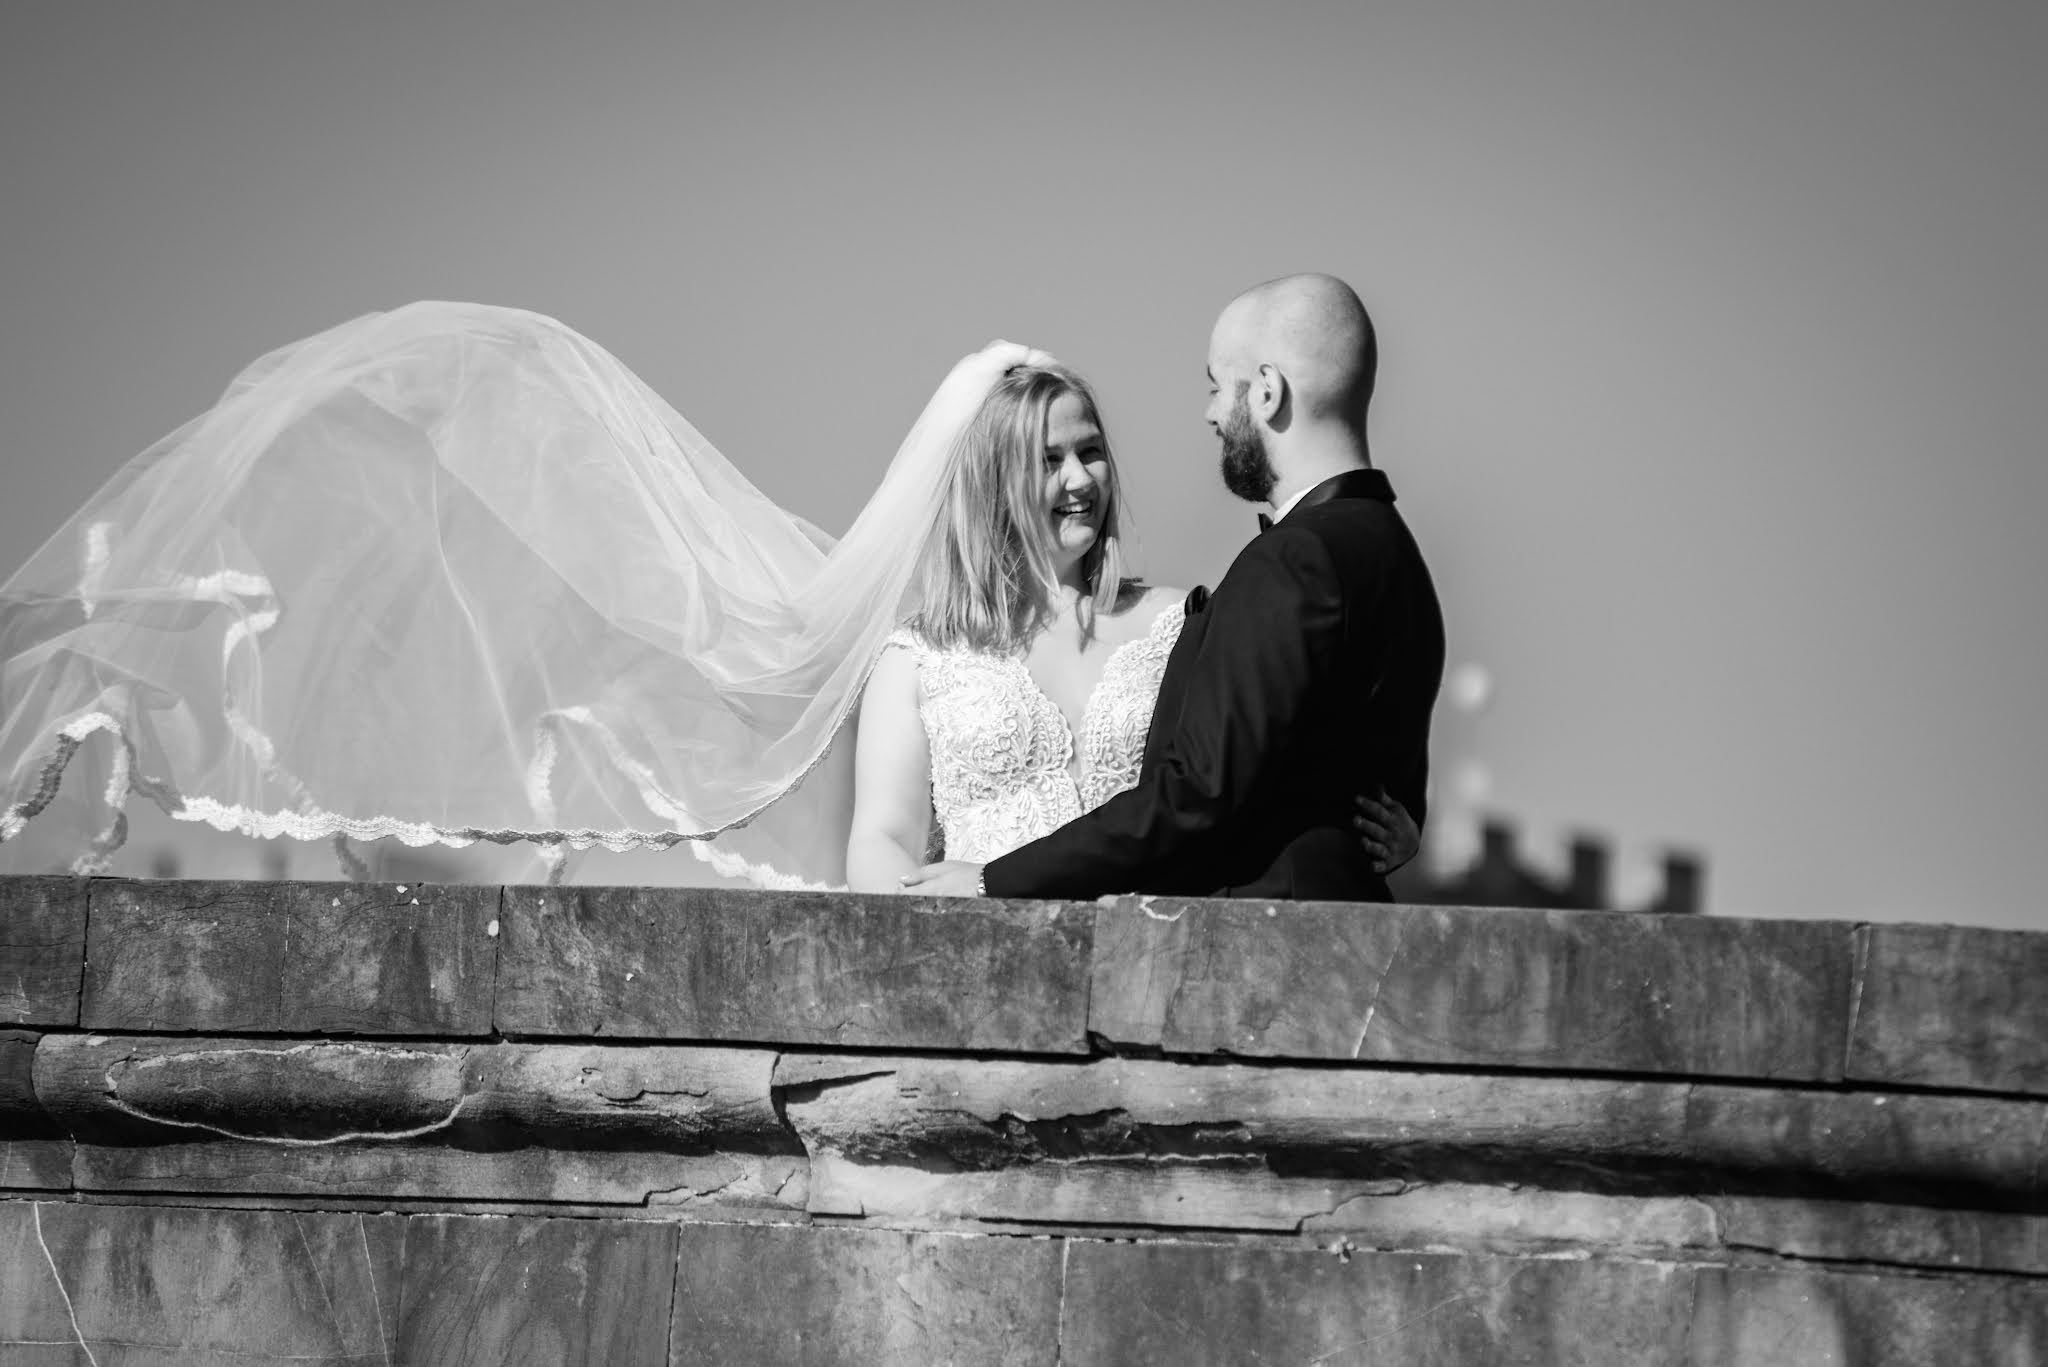 Sesja ślubna we Florencji, fotograf Toskania